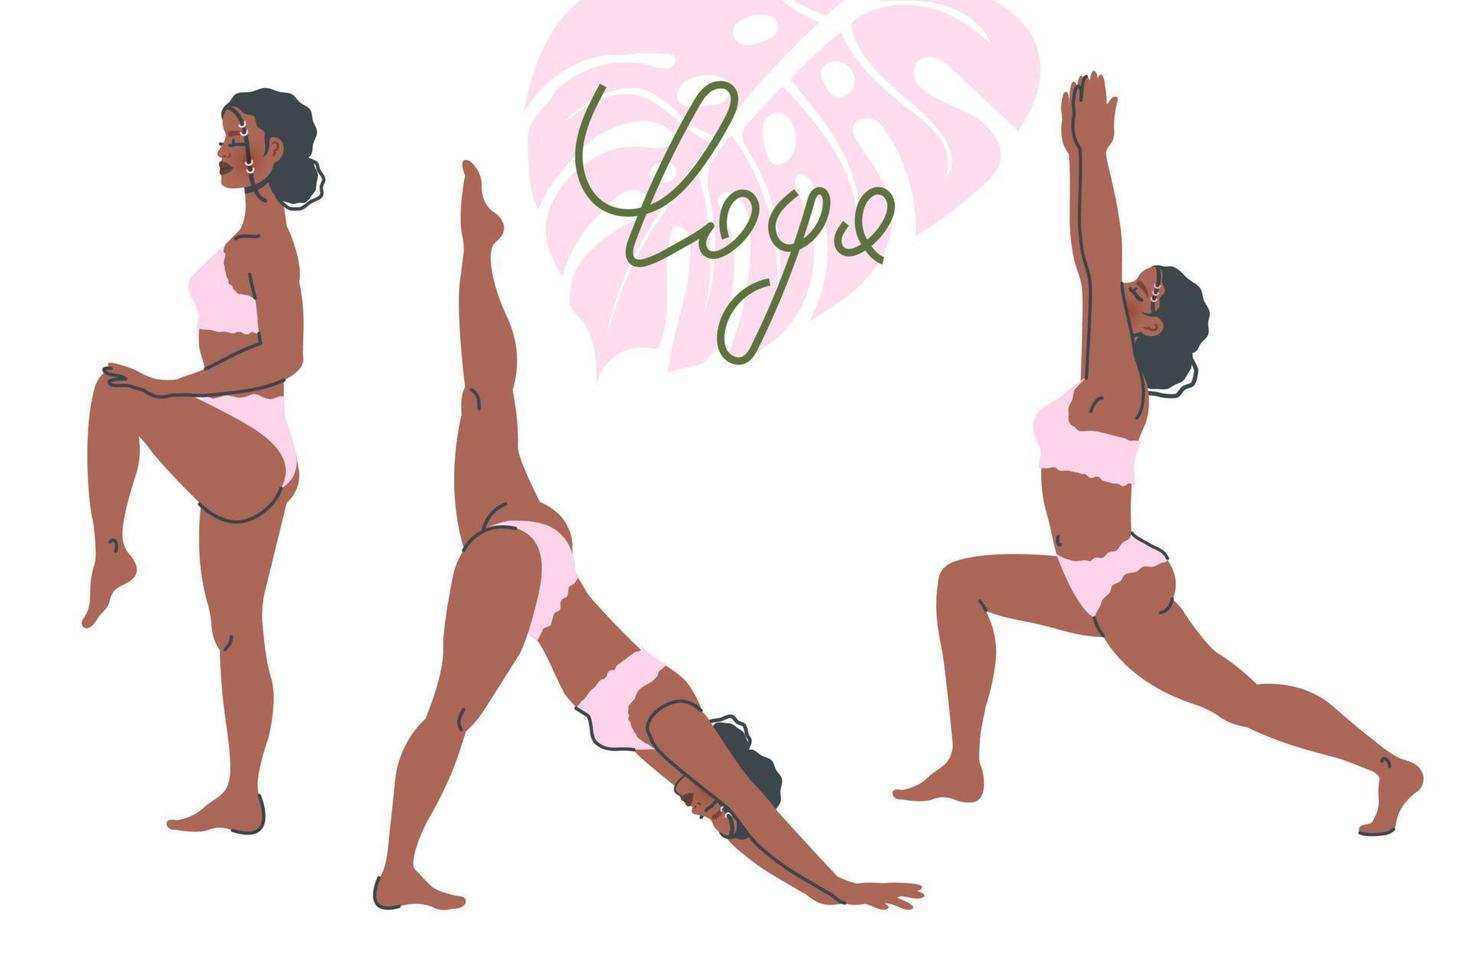 conjunto de posturas de yoga aislado sobre fondo blanco. joven negra en pose de yoga se extiende. práctica de meditación y respiración. ilustración plana vectorial para un estilo de vida saludable, deporte, pancarta, afiche vector